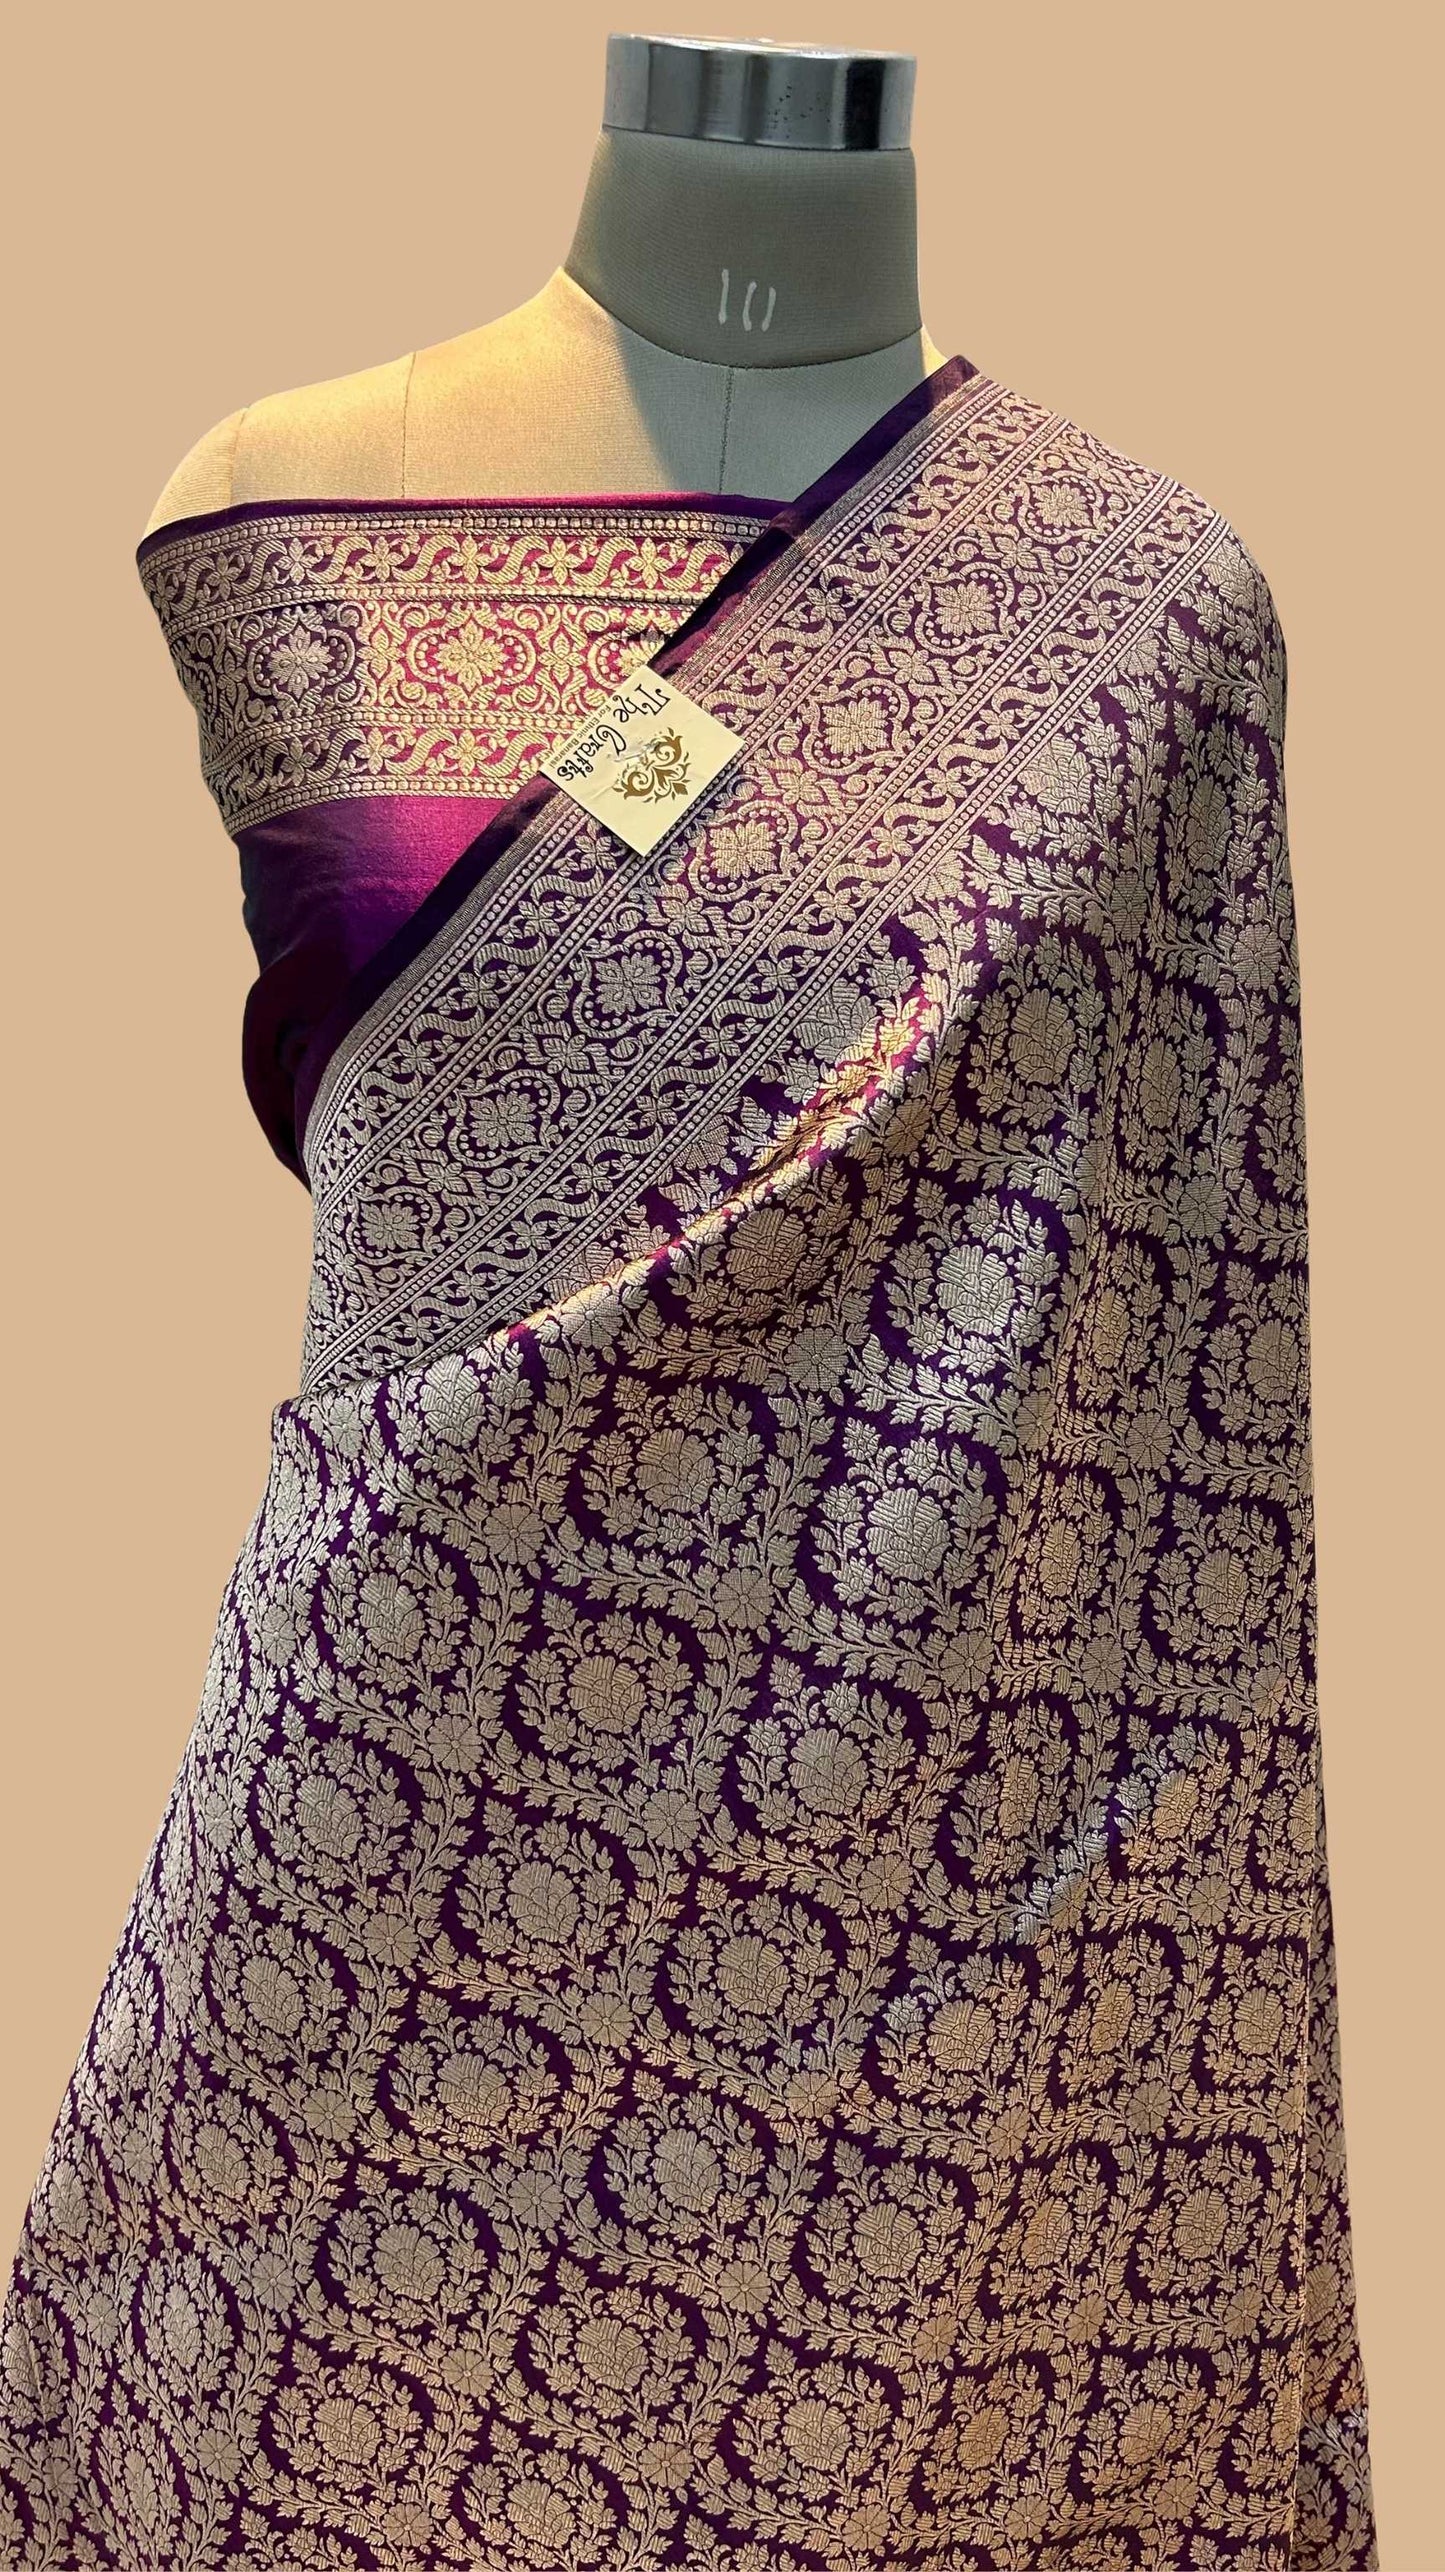 Pure Katan Silk Handloom Banarasi Saree - Tanchui Brocade